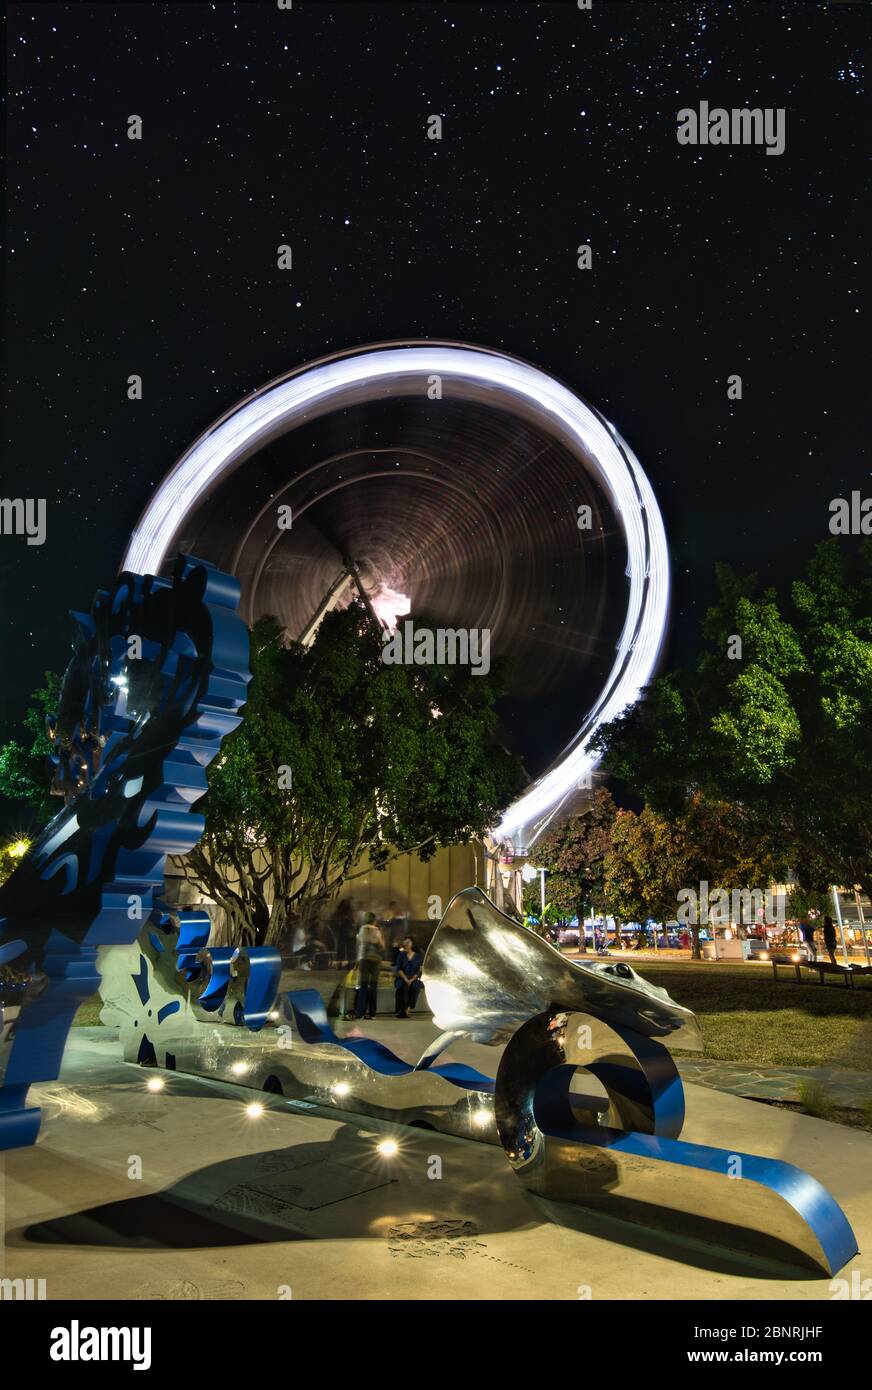 Die Reef Eye Riesenrad-Attraktion und die spektakuläre Kunstinstallation auf der Esplanade in Cairns, Queensland, Australien. Stockfoto